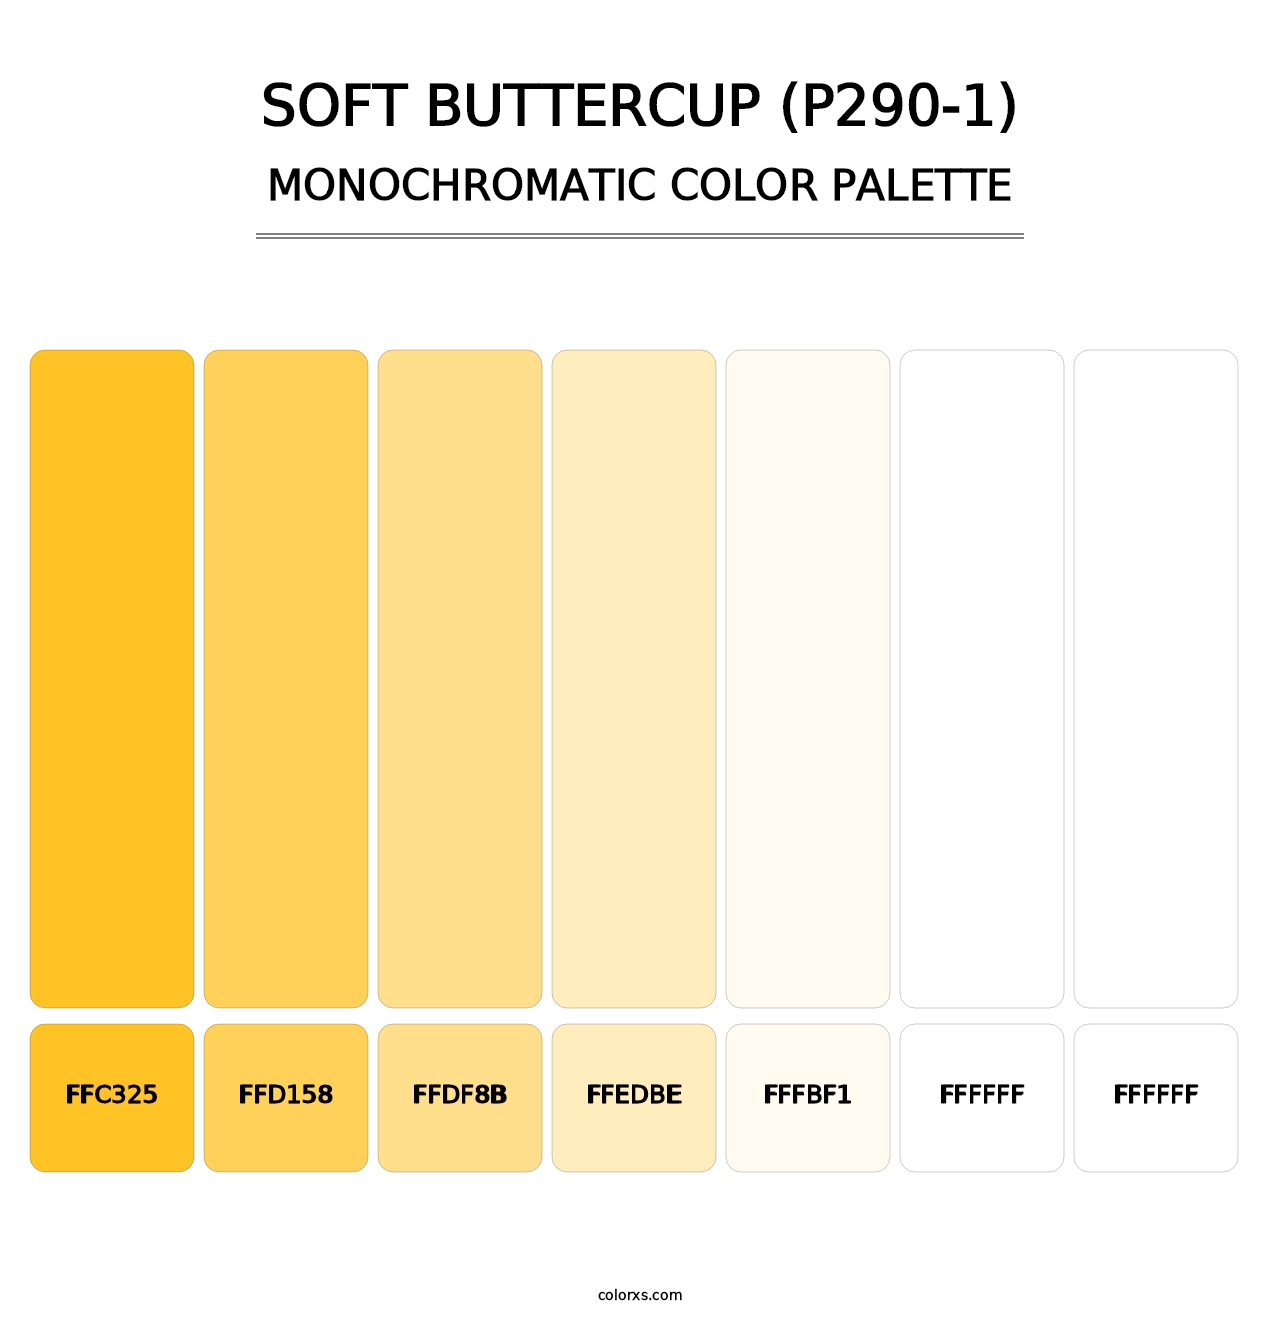 Soft Buttercup (P290-1) - Monochromatic Color Palette